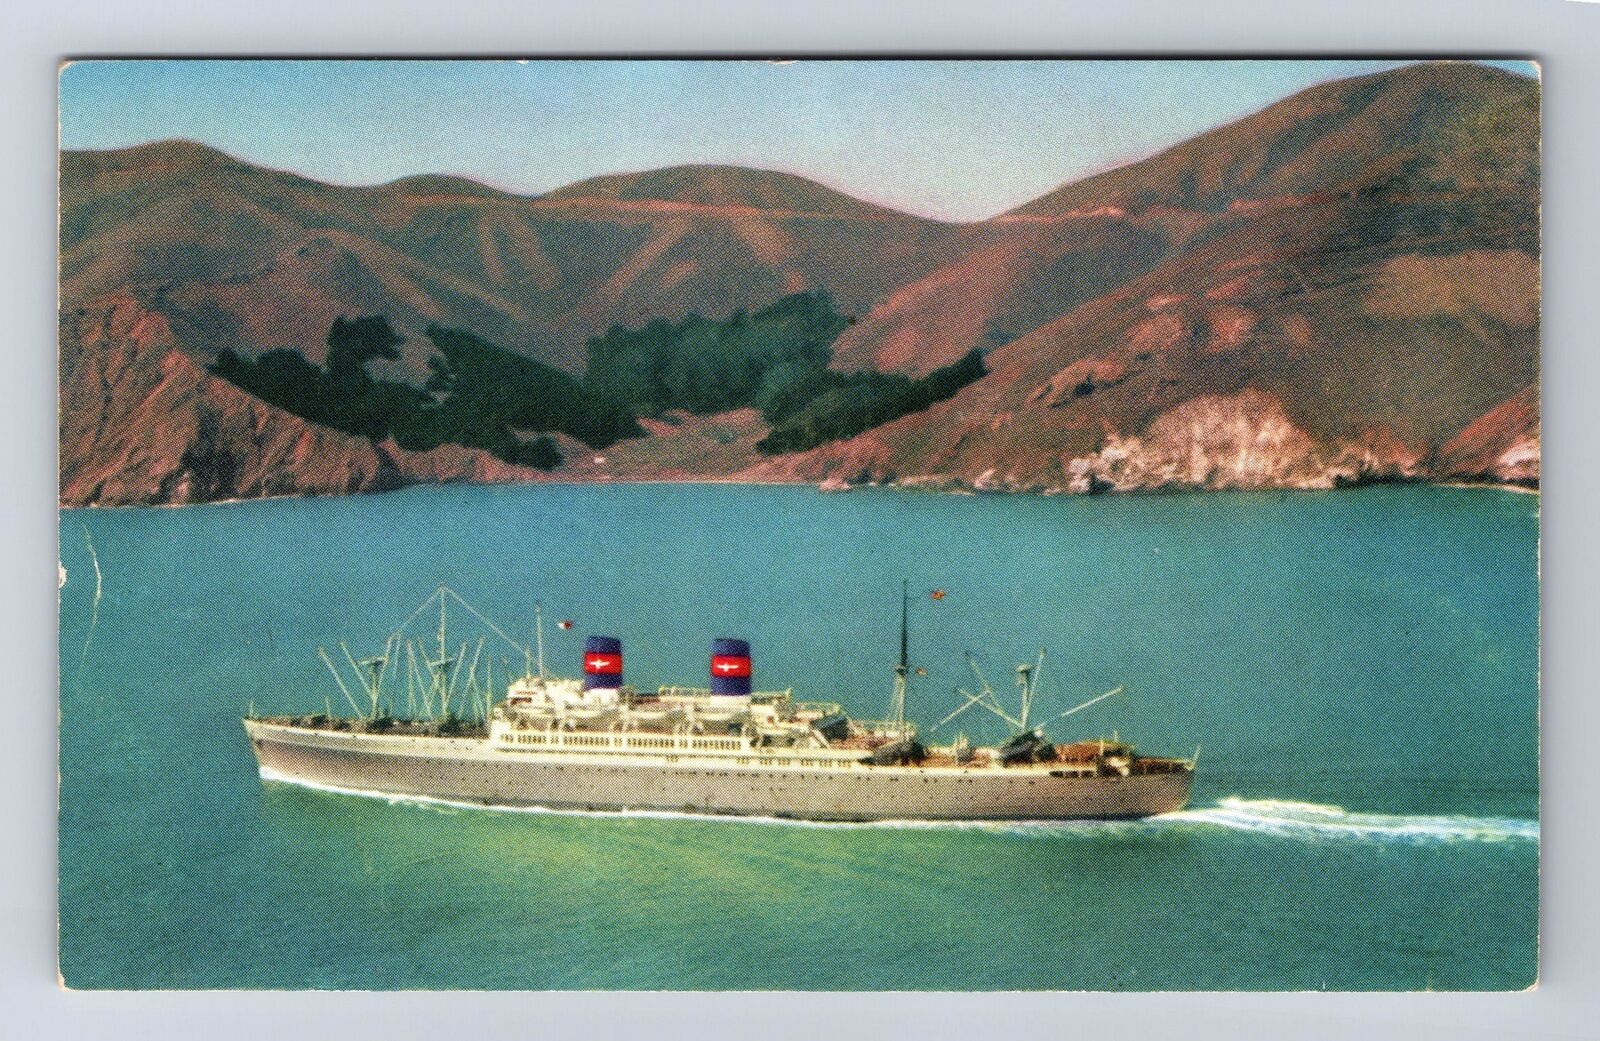 S.S President Cleveland Luxury Liner, Ship, Transportation Vintage Postcard